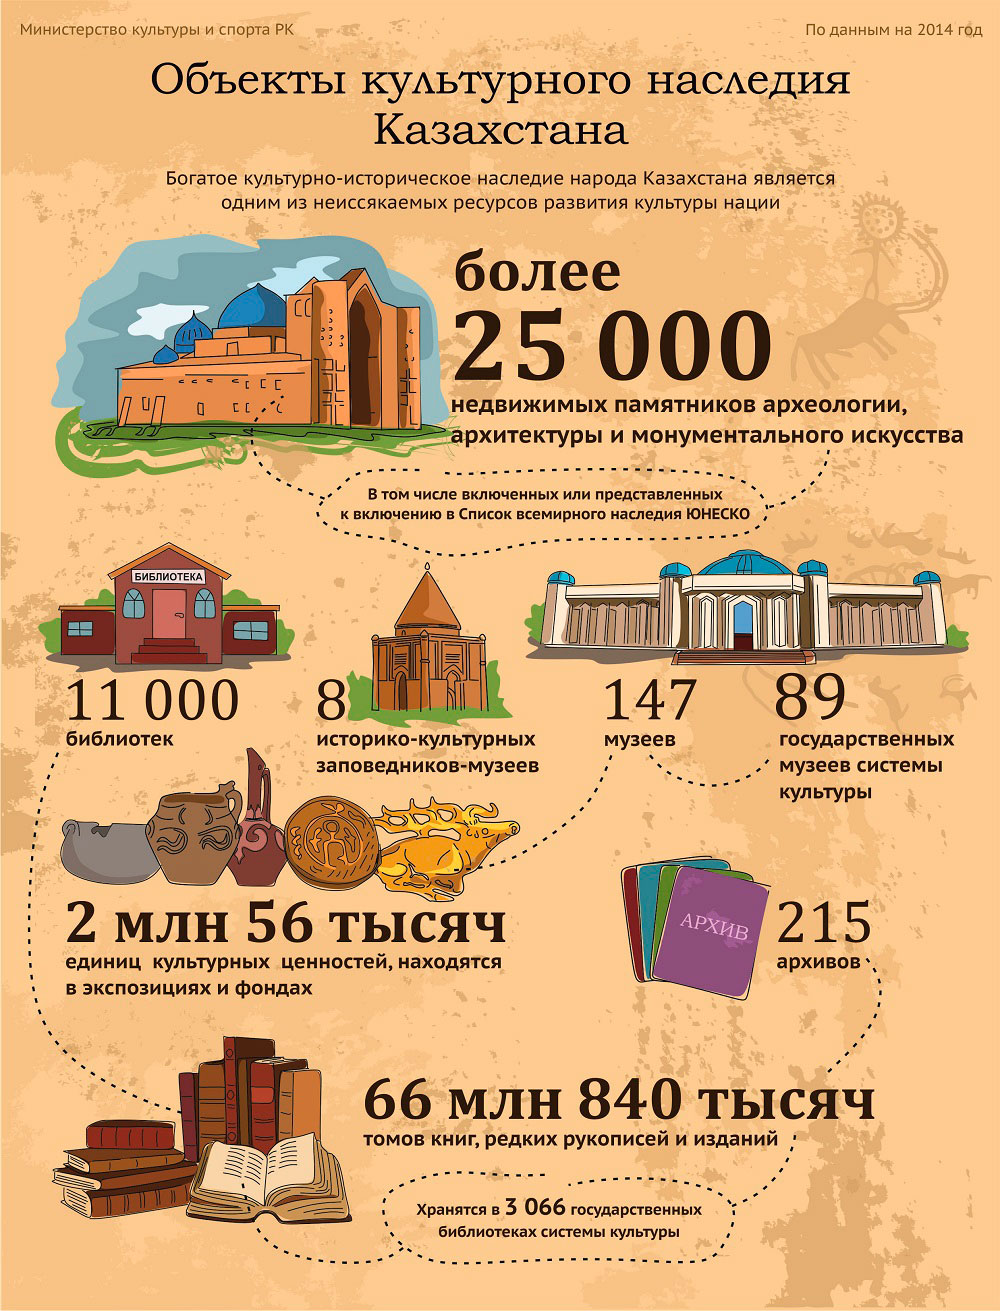 Объекты культурного наследия Казахстана